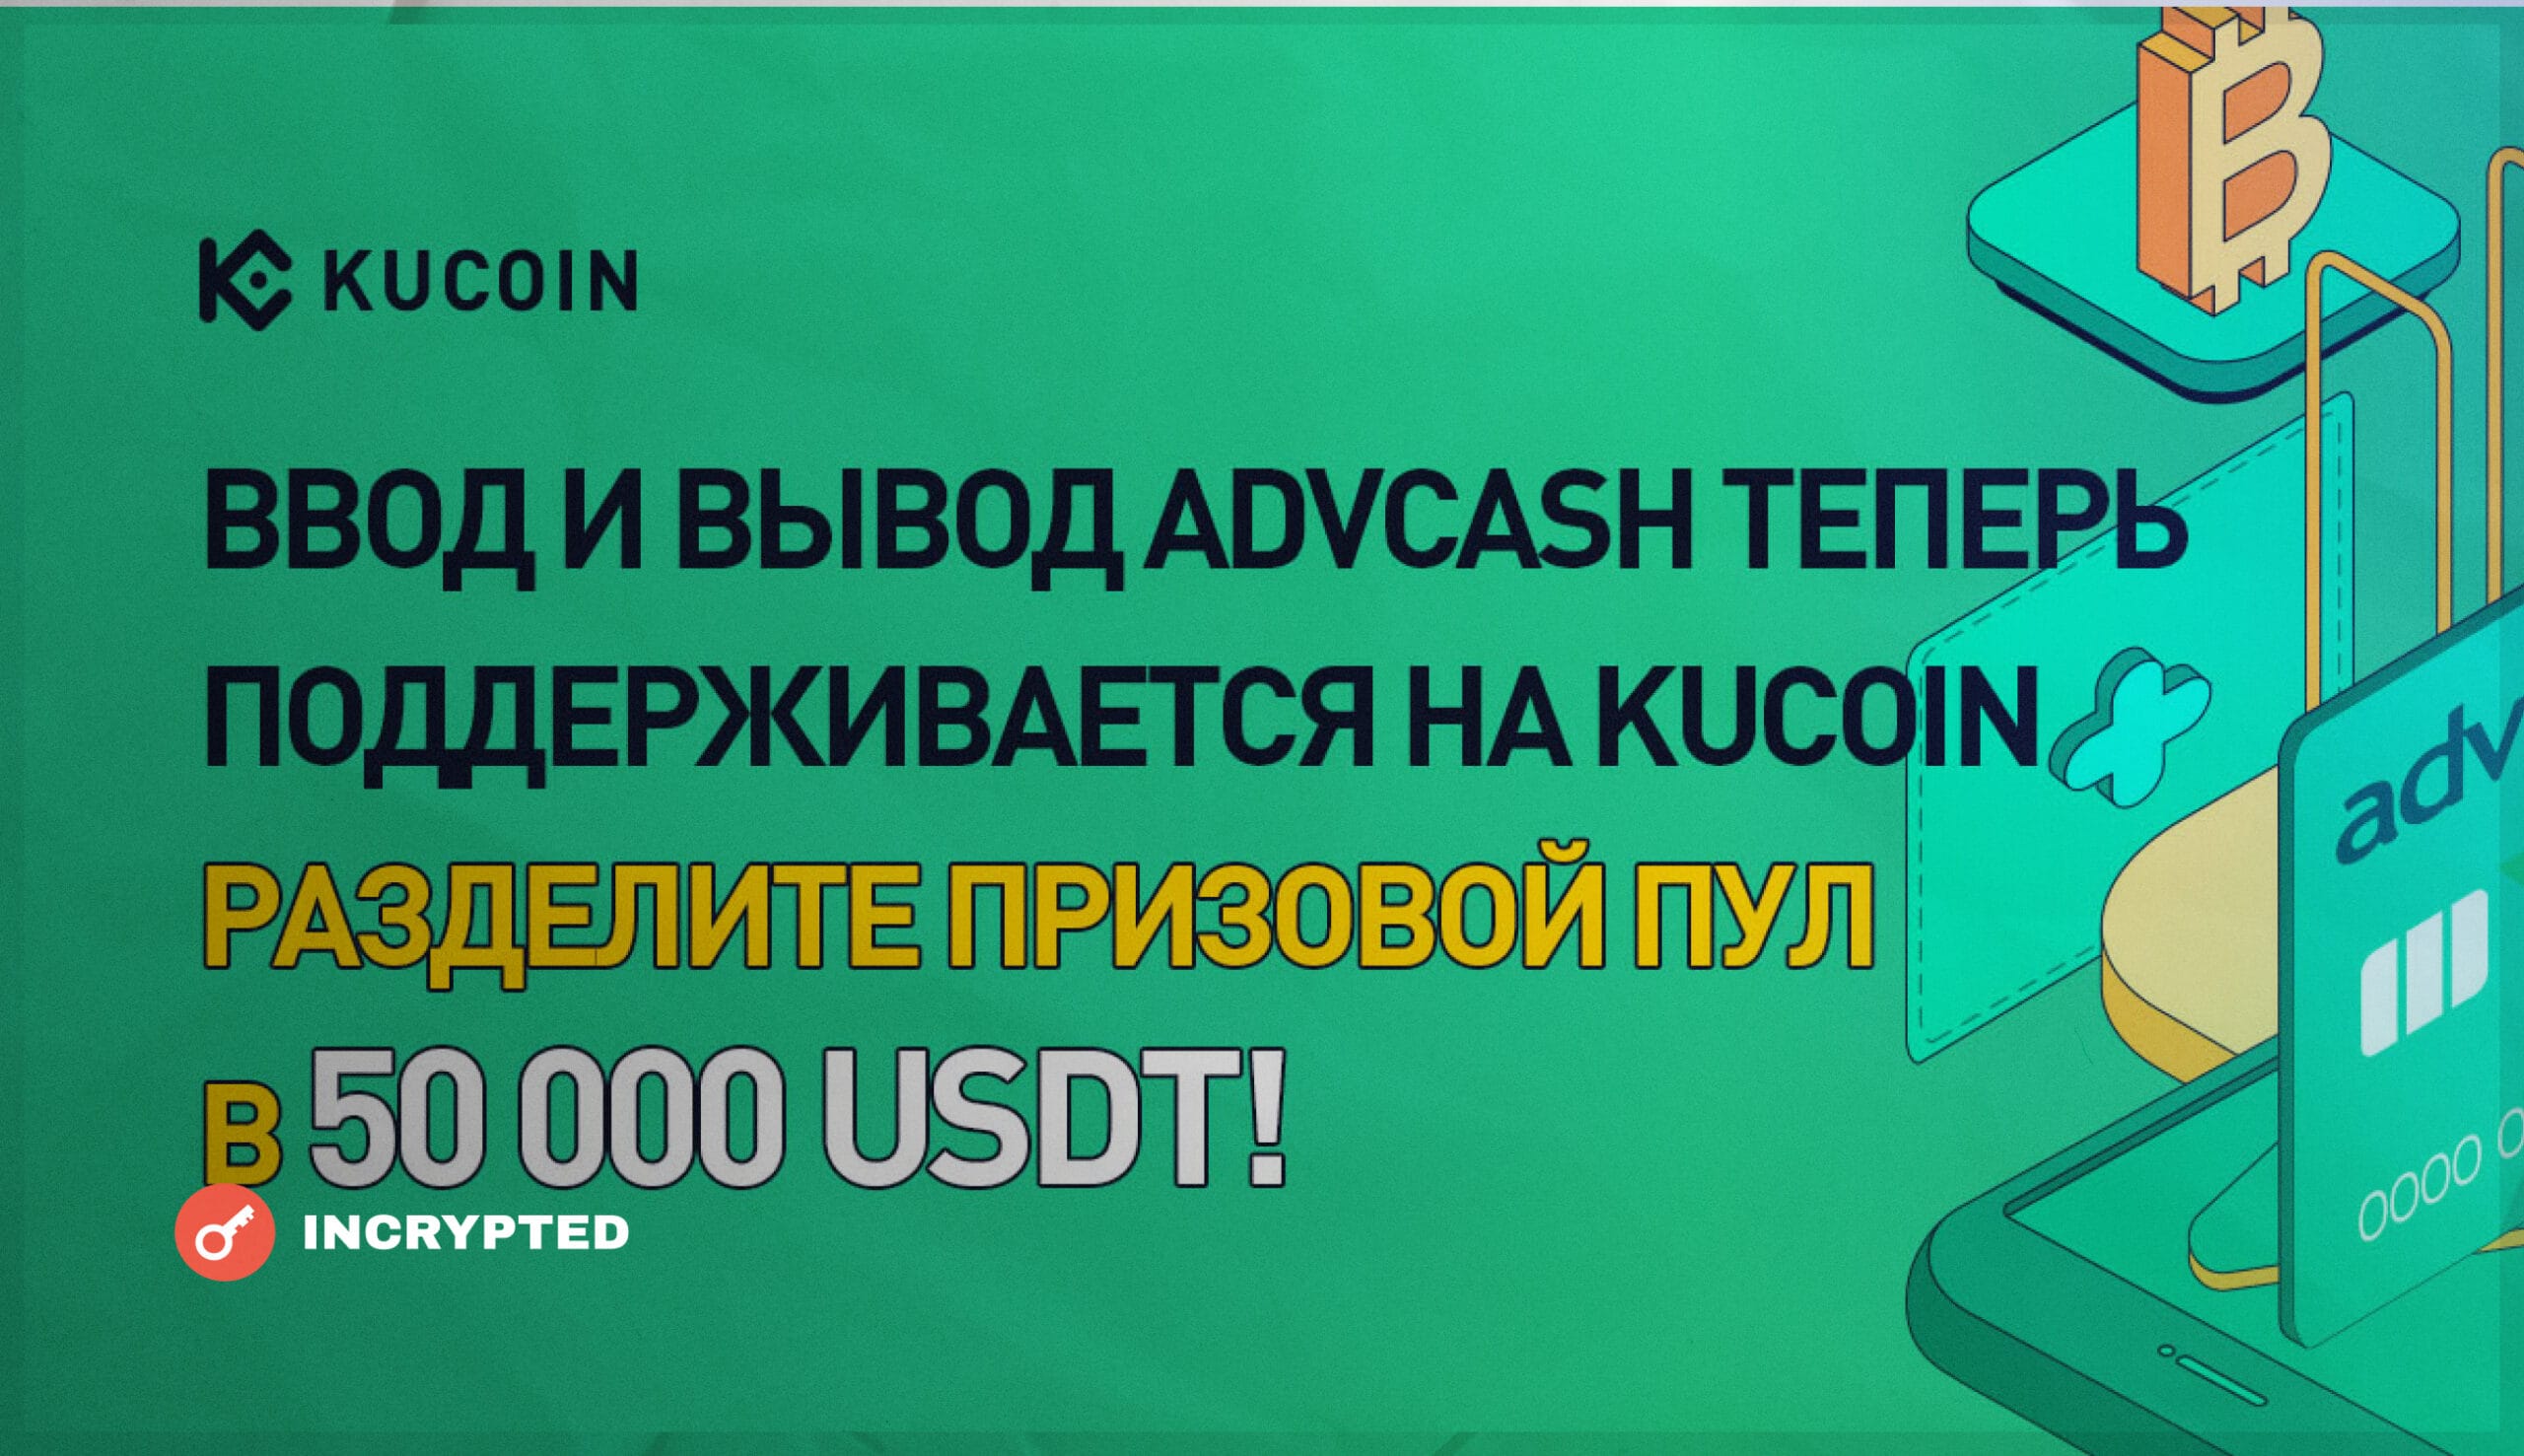 KuCoin интегрировал Advcash и проводит конкурс на $50 000. Заглавный коллаж новости.